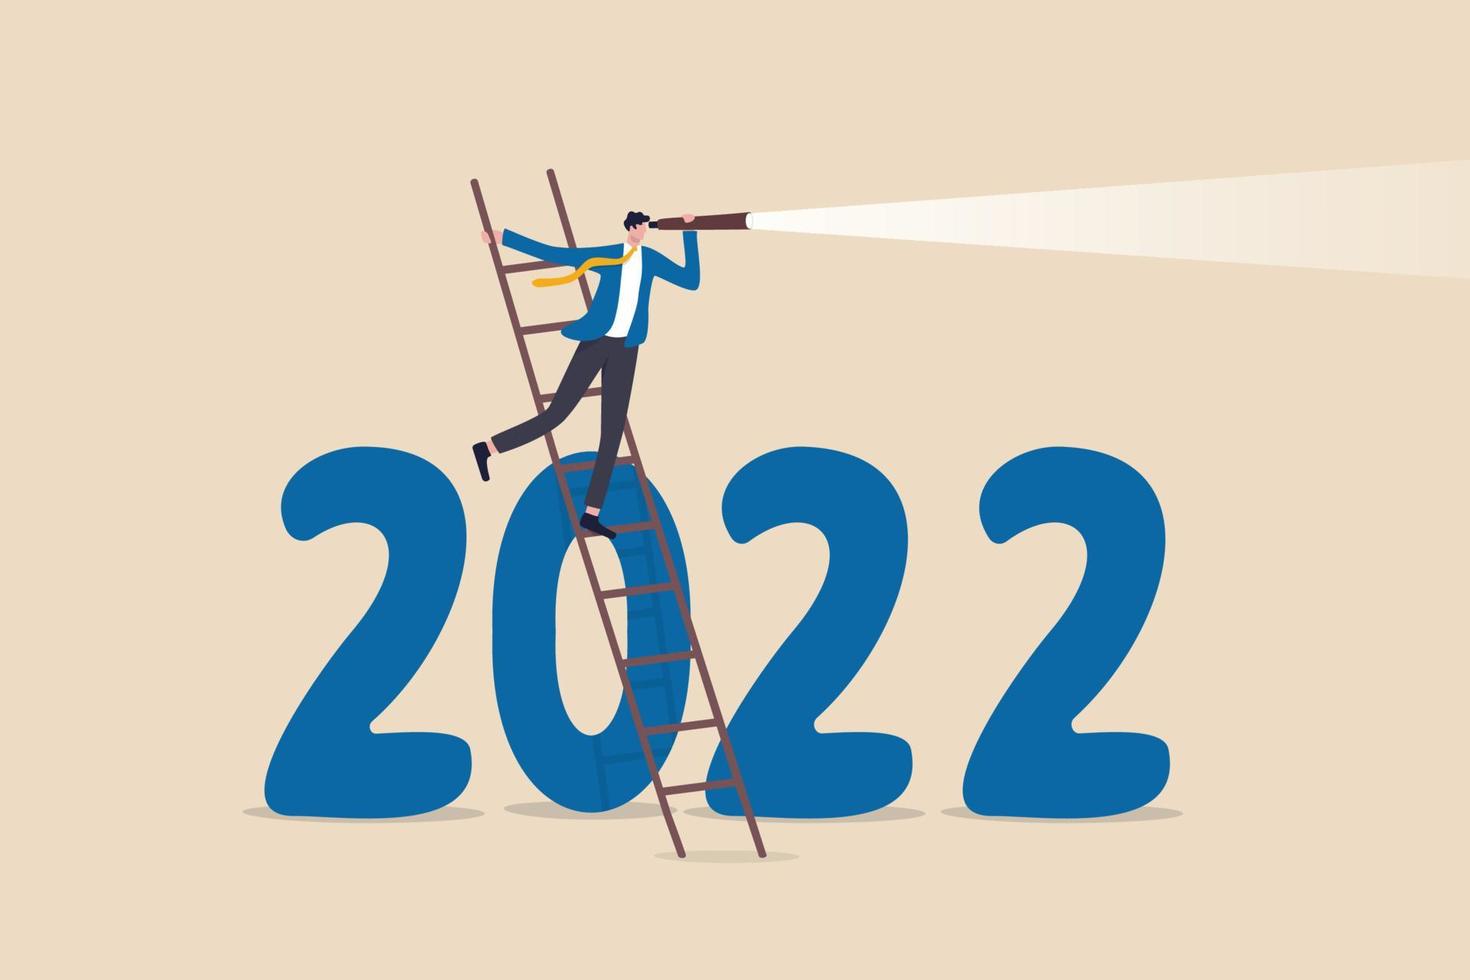 år 2022 ekonomiska utsikter, prognos eller visionär att se framtiden framåt, utmaning och affärsmöjlighetskoncept, smart affärsman klättrar uppför stegen för att se genom teleskopet på år 2022 nummer. vektor